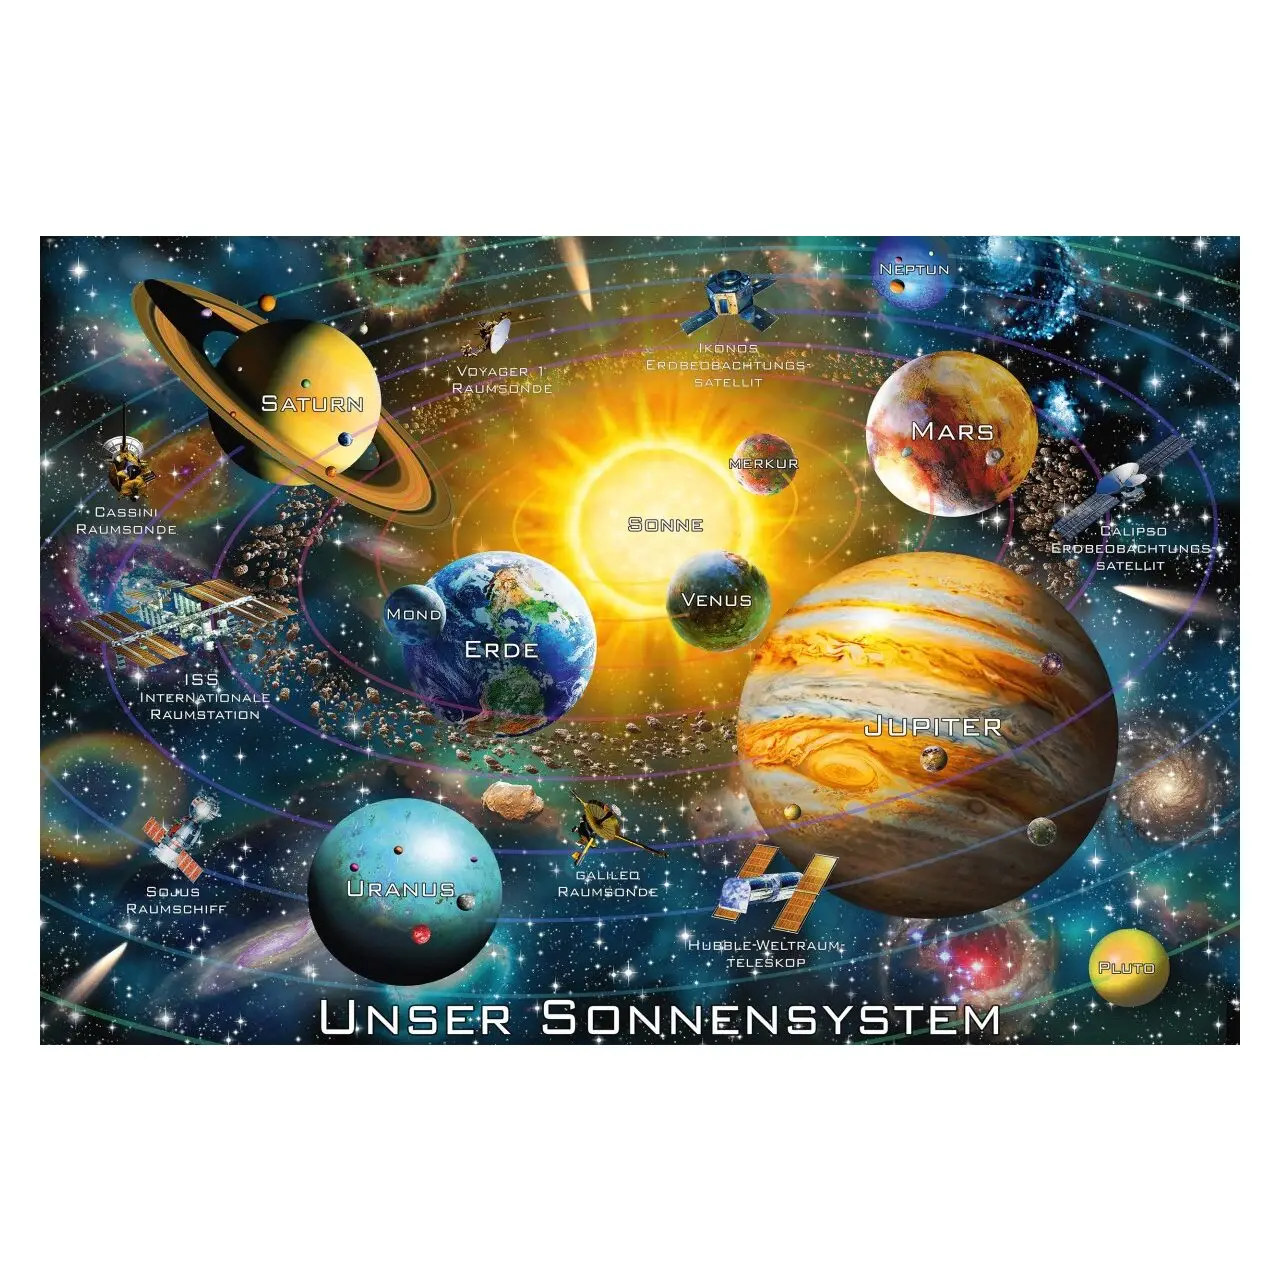 Teile 200 SchmidtPuzzle Sonnensystem